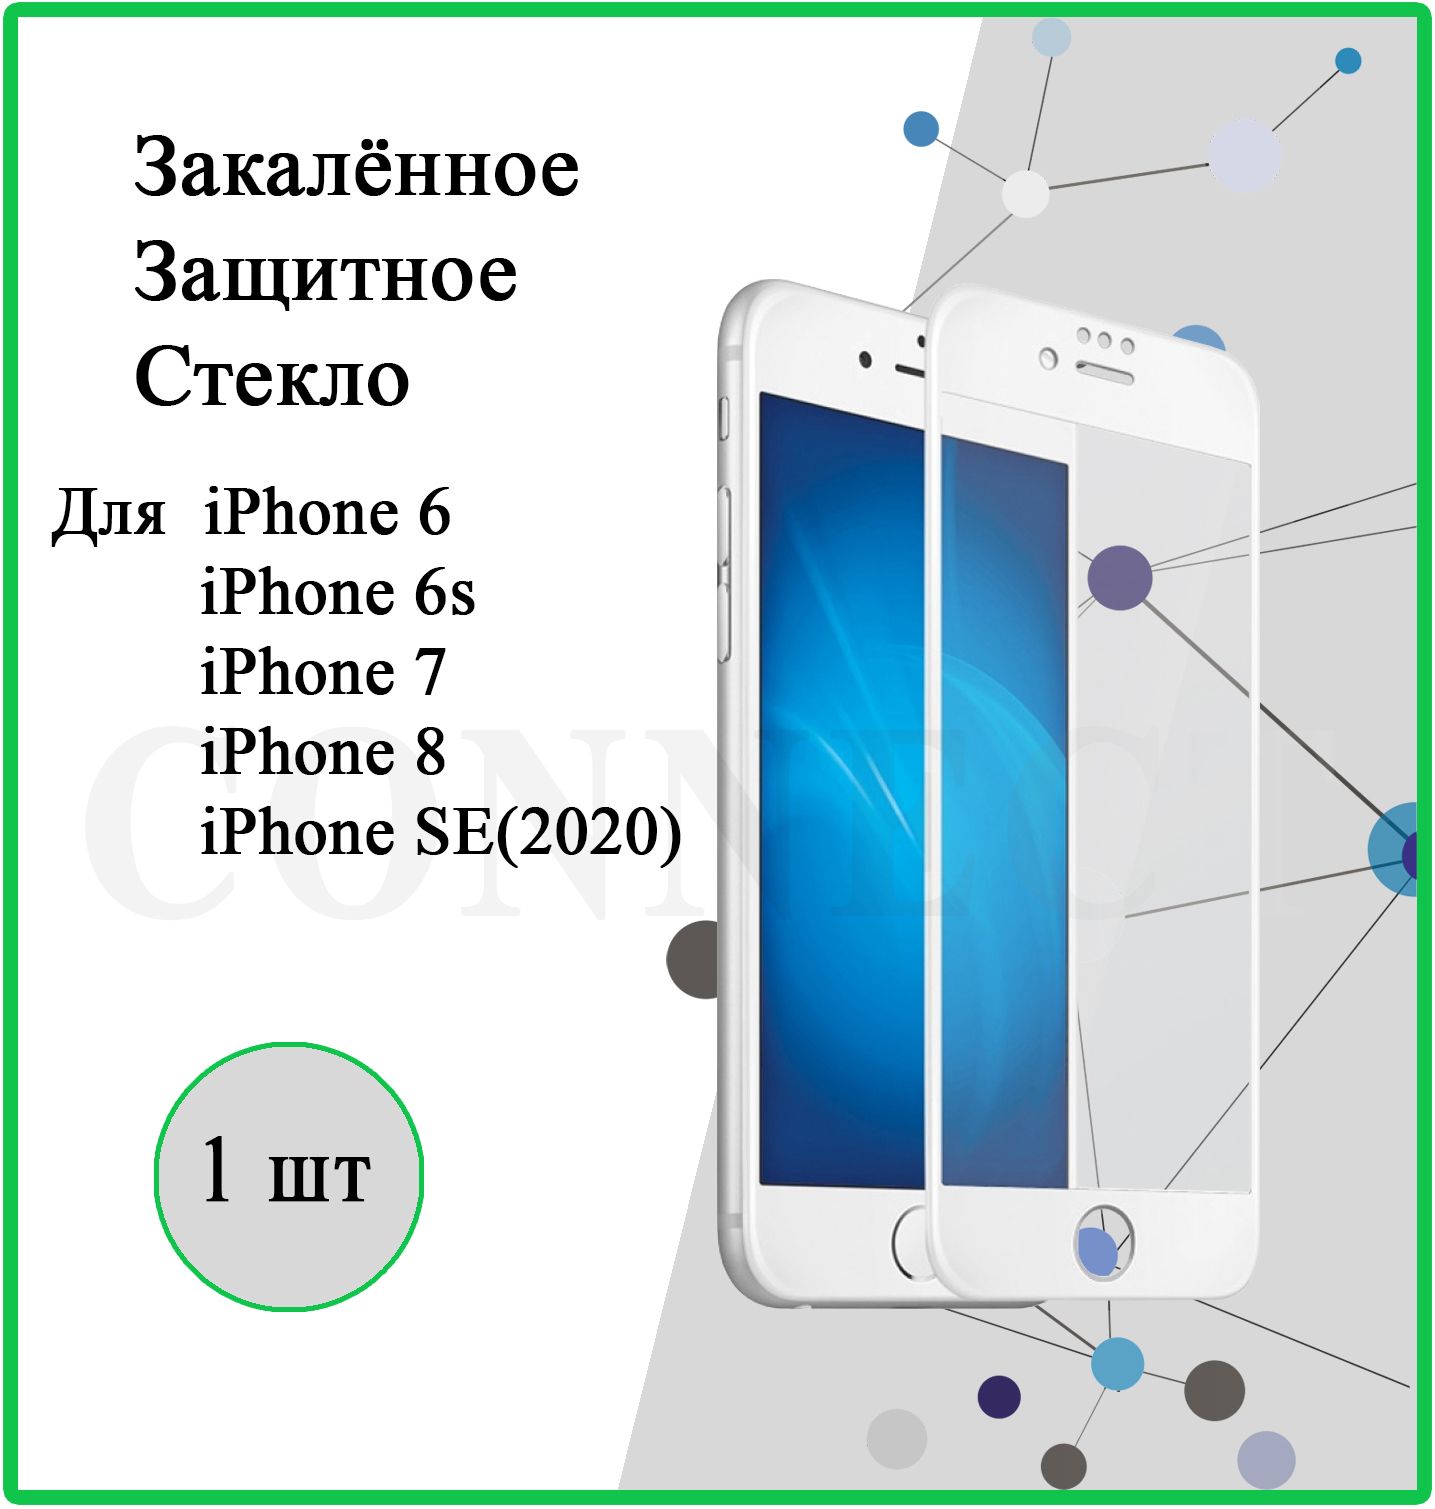 ЗащитноестеклонаAppleiPhone6/iPhone6S/iPhone7/iPhone8/iPhoneSE(2020)/White/дляАйфон6,6S,7,8,SE(2020)сбелойрамкой/"4.7"Противоударное,полноеолеофобноепокрытие